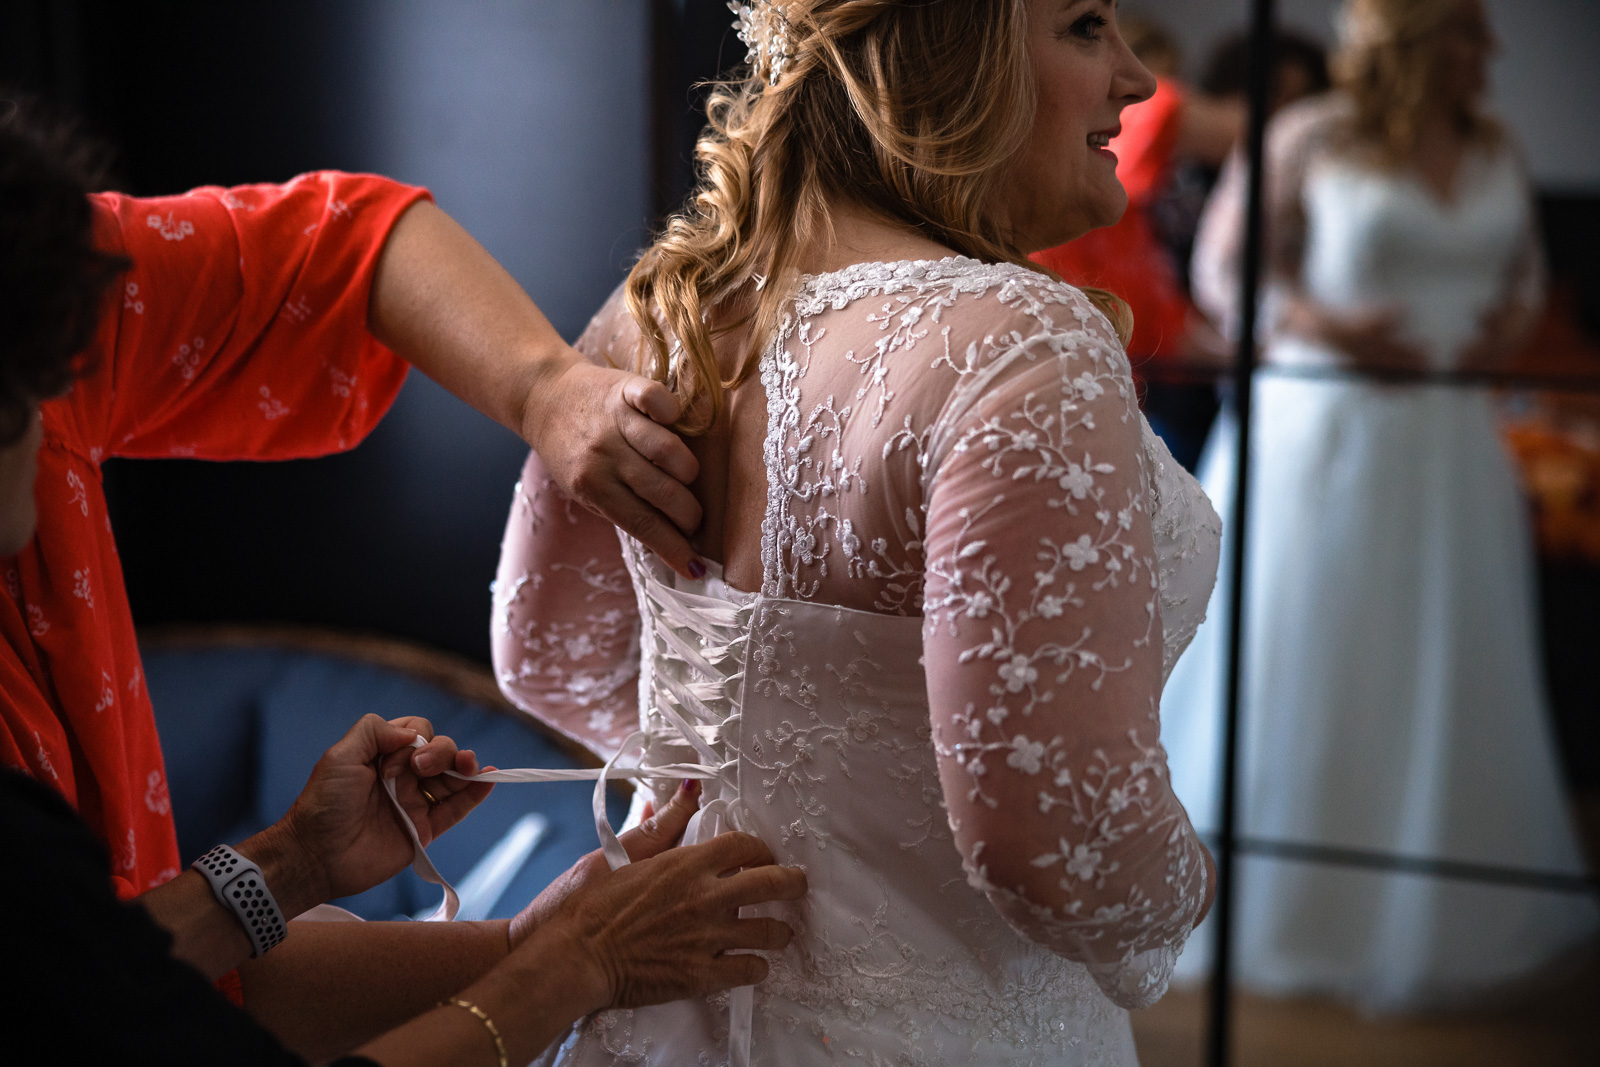 Bruid krijgt hulp met trouwjurk dicht doen Trouwfotograaf Spaansche Hof Den Haag